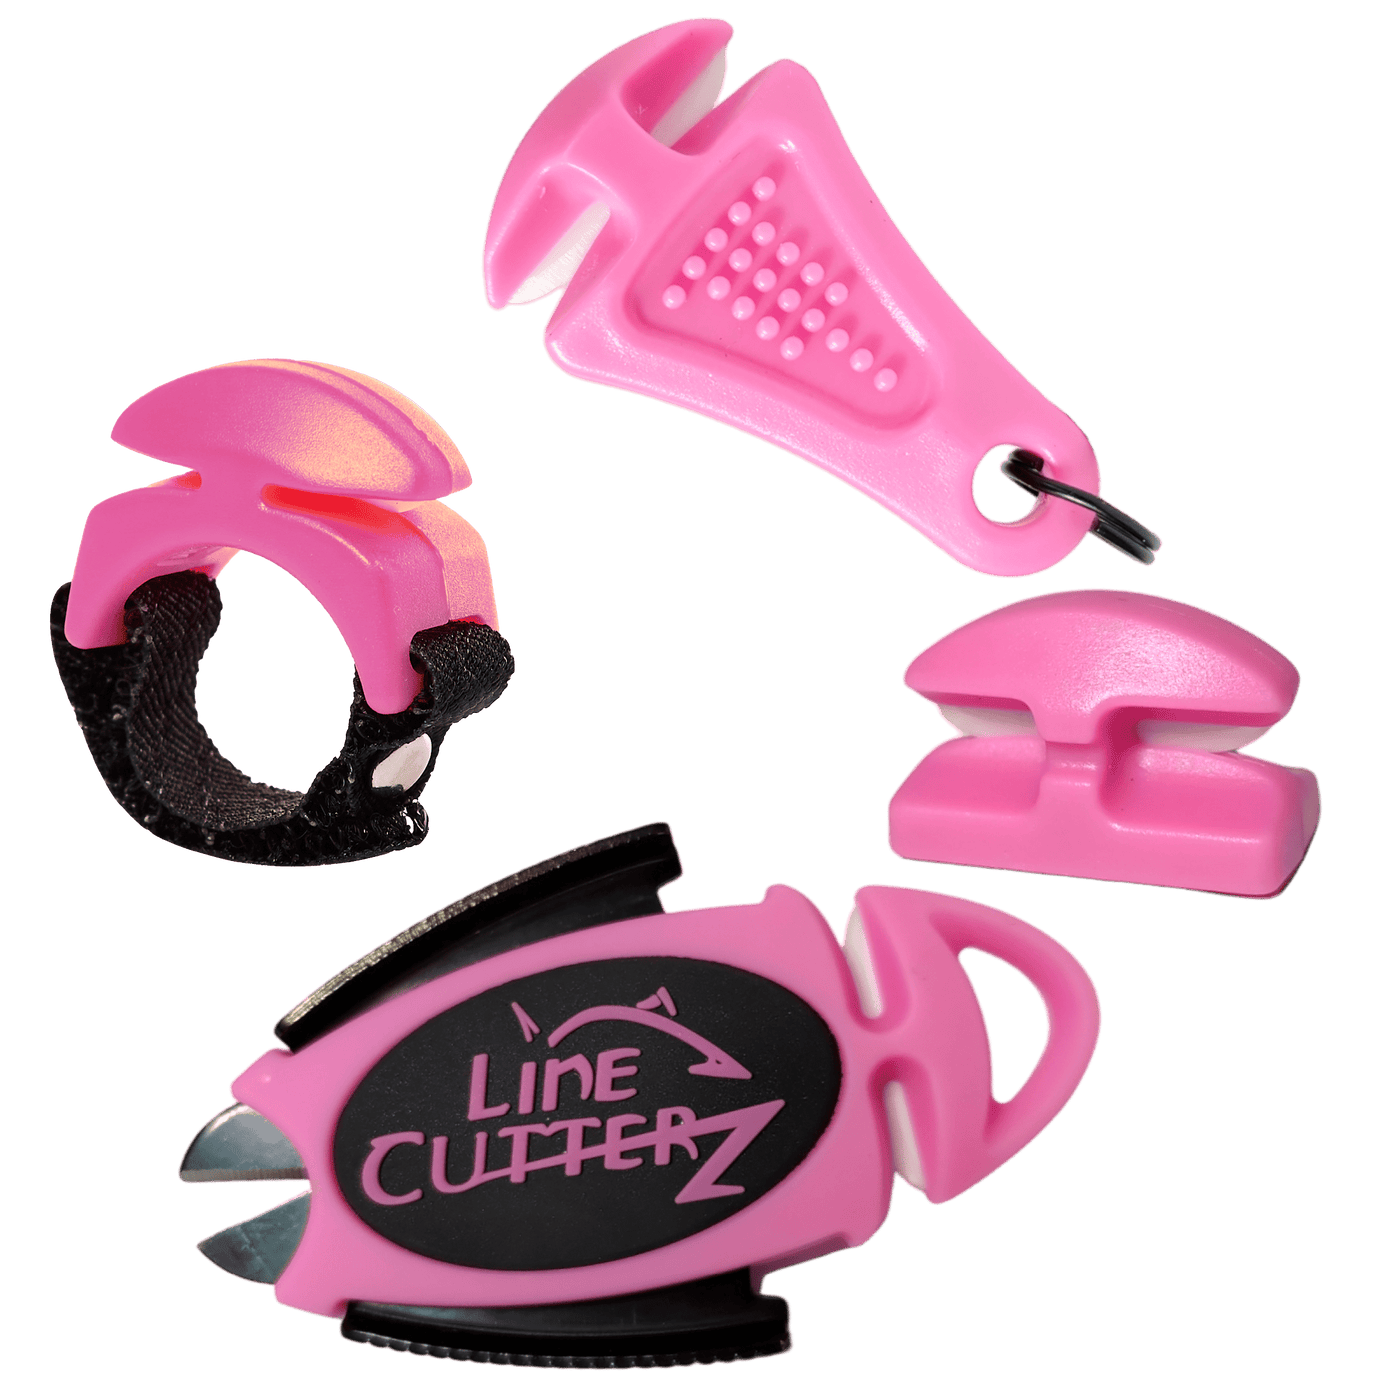 QUADRUPLE PLAY Combo Pack Combo Cutter Line Cutterz Pink 